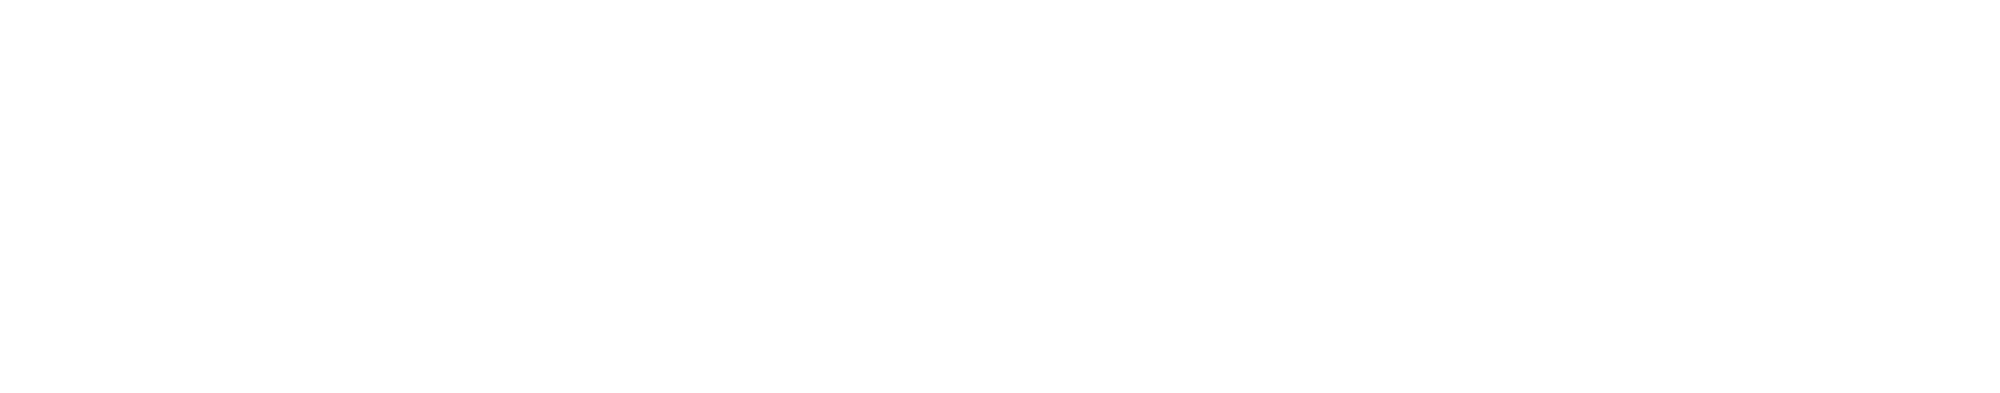 Deezer Monochrome Logo